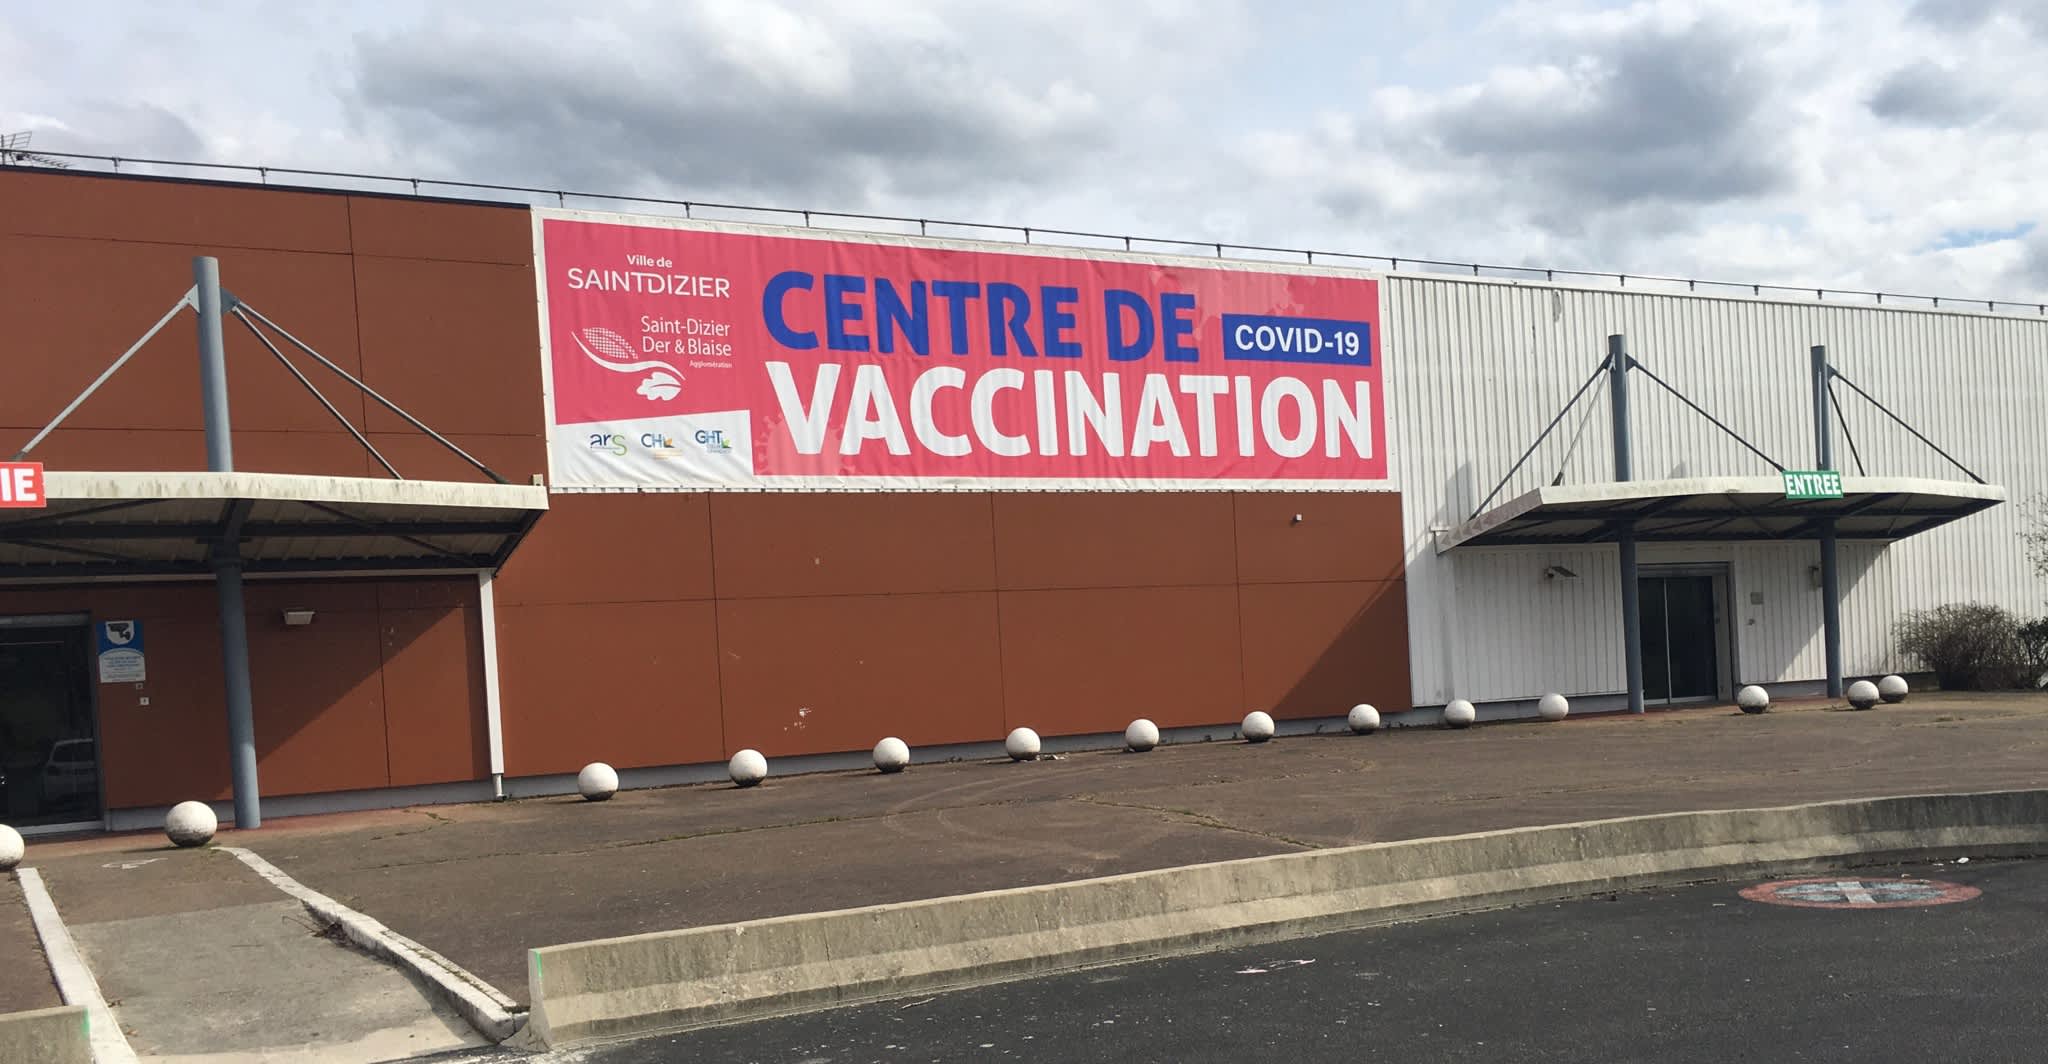 centre de vaccination covid 19 saint dizier centre de vaccination covid 19 a saint dizier